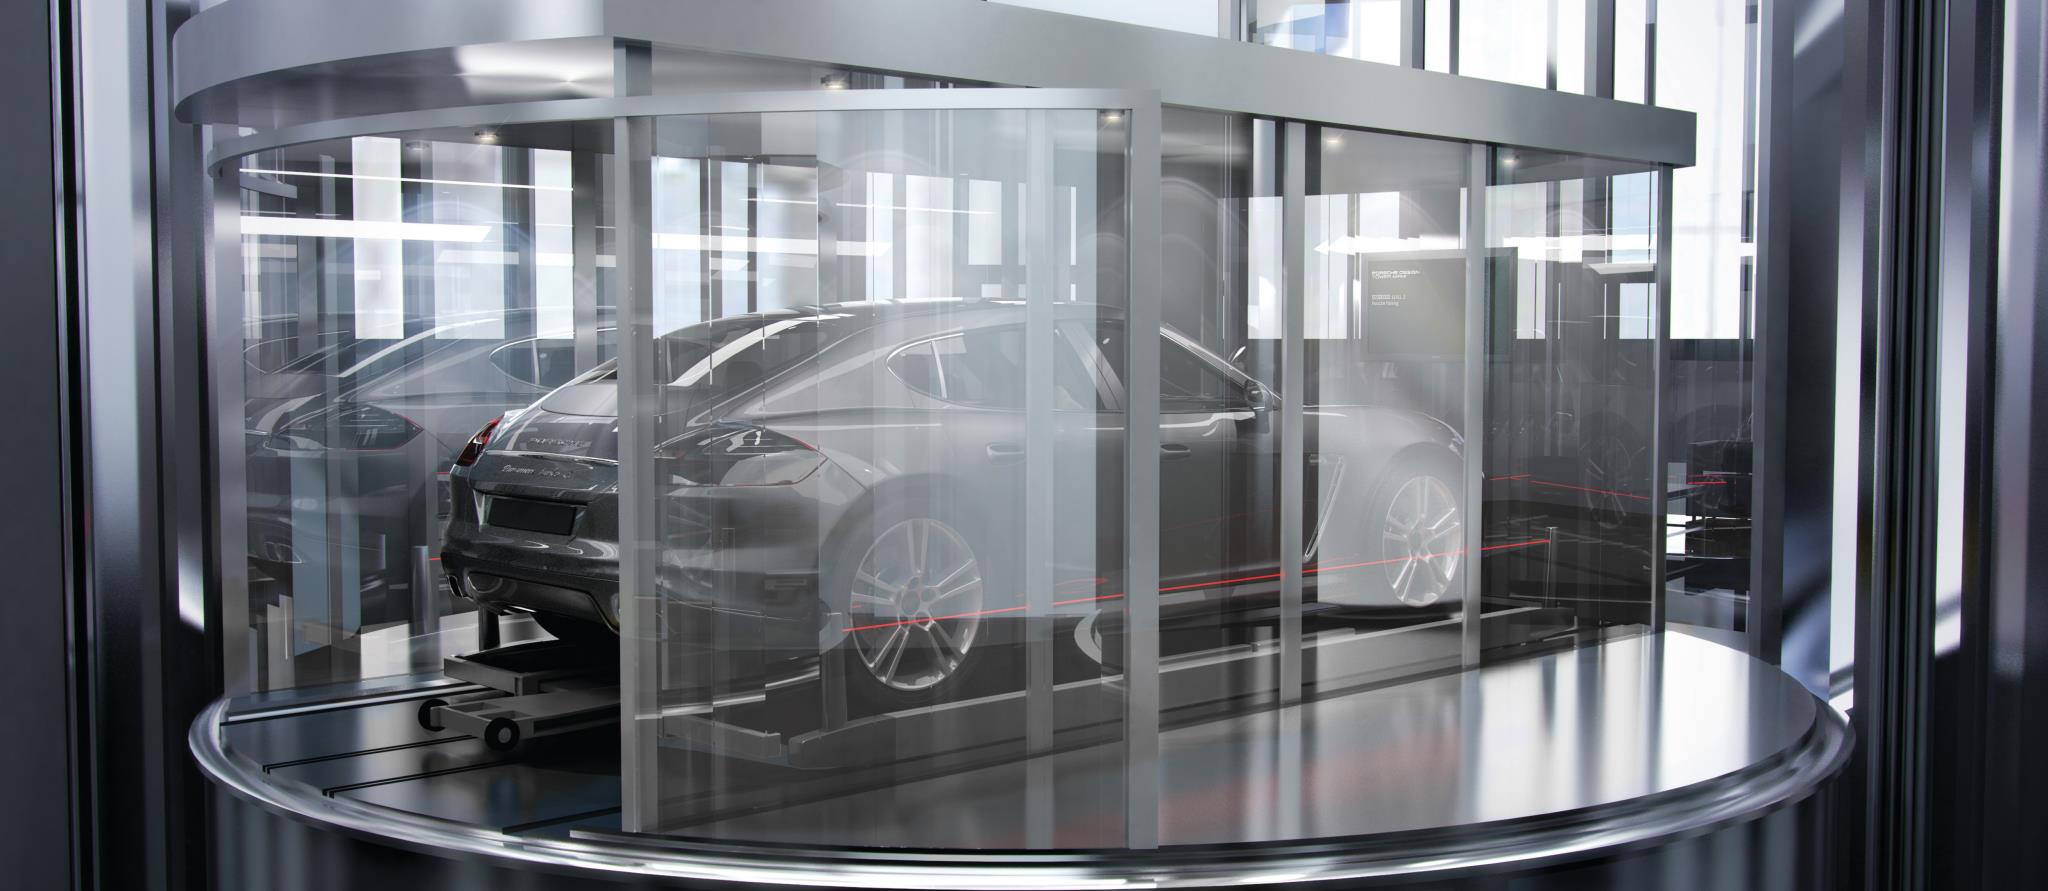 Porsche Design Tower Miami Auto Elevator